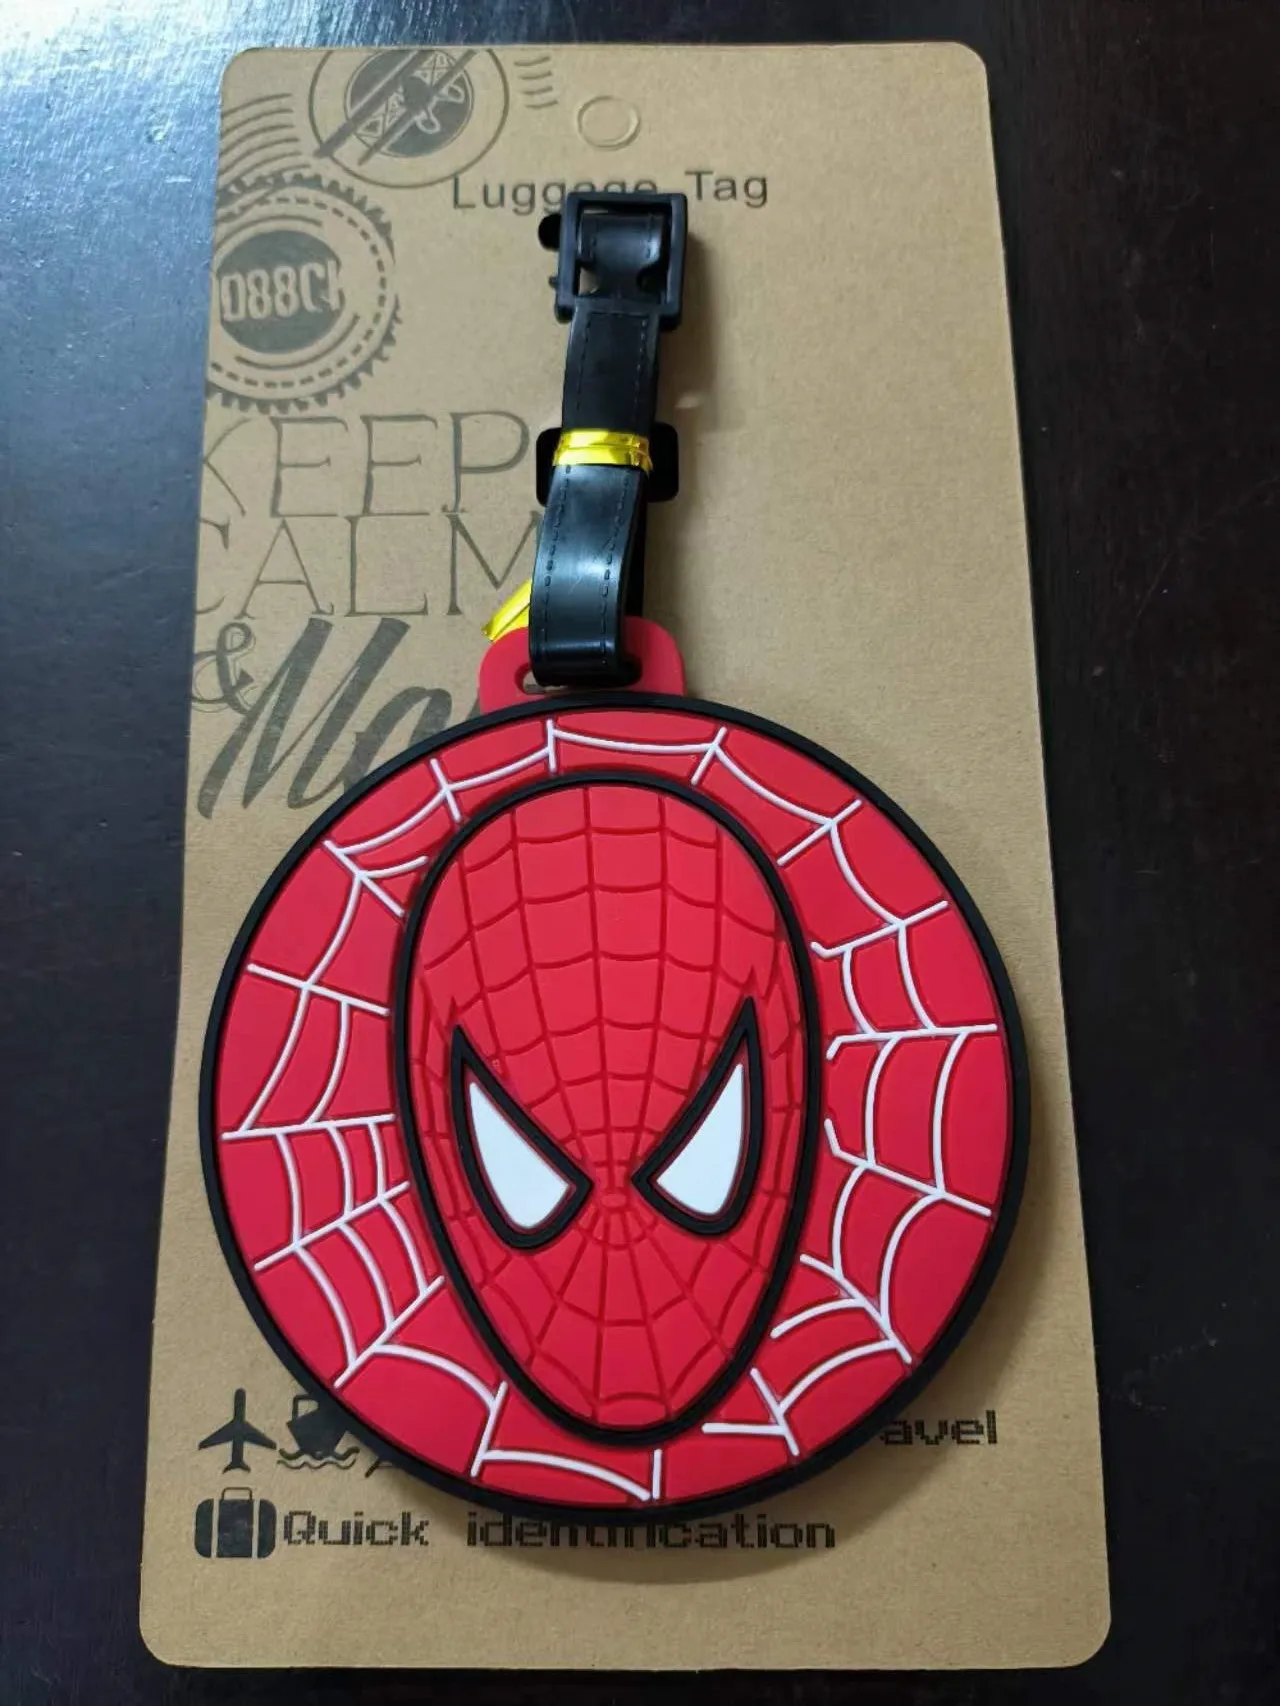 Cartoon The Avengers Spiderman accessori da viaggio etichetta per bagagli valigia Fashion Silicon Portable Travel Label ID Addres Holder